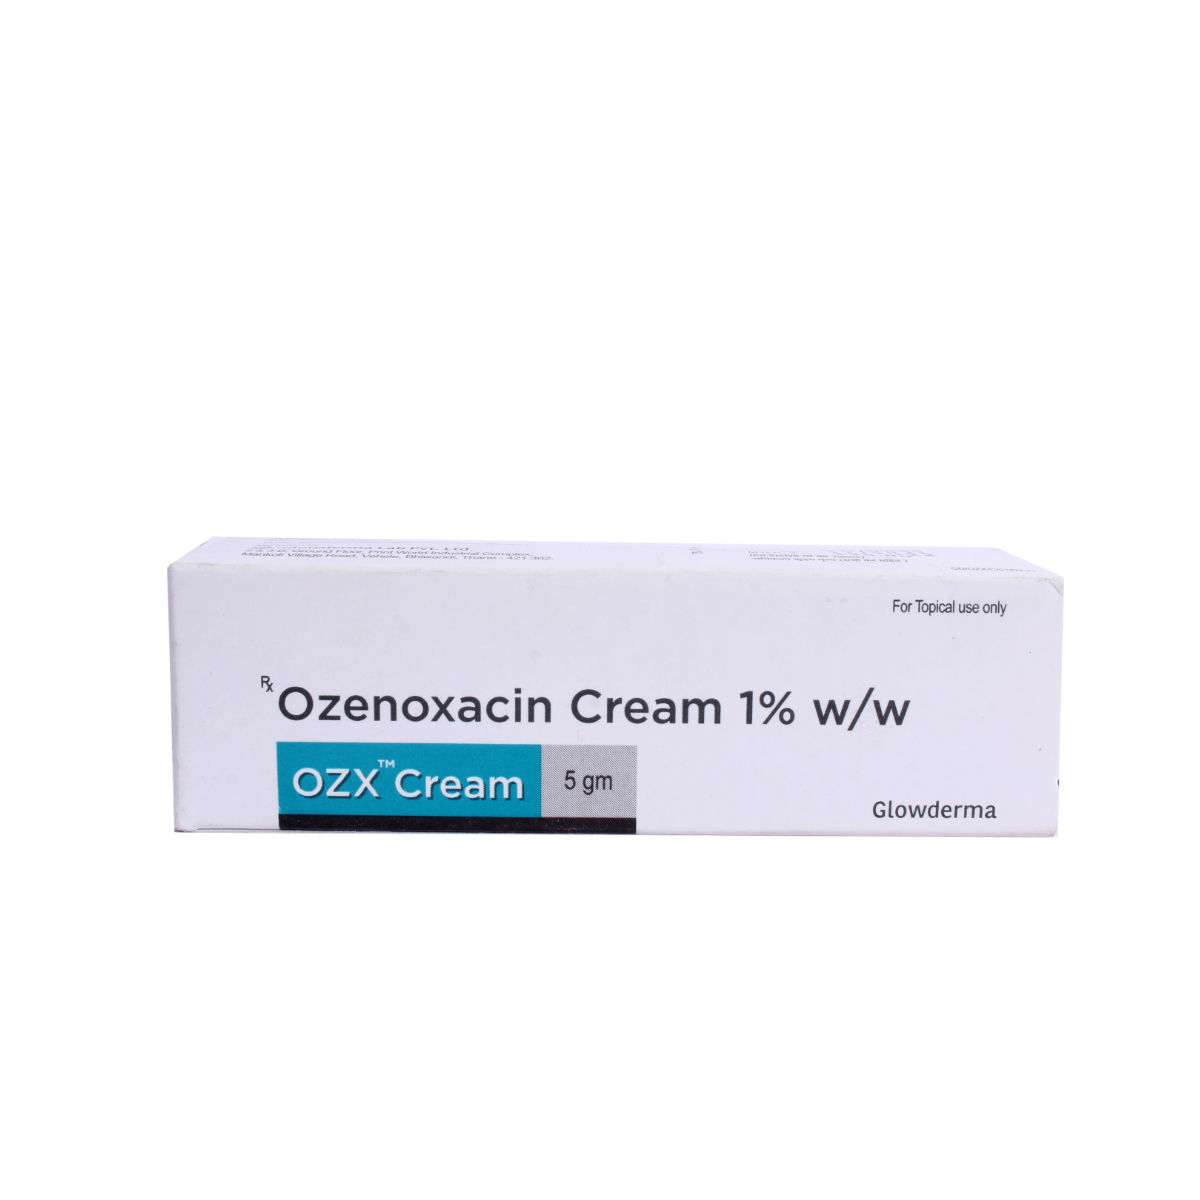 Buy Ozx 1% Cream 5 gm Online